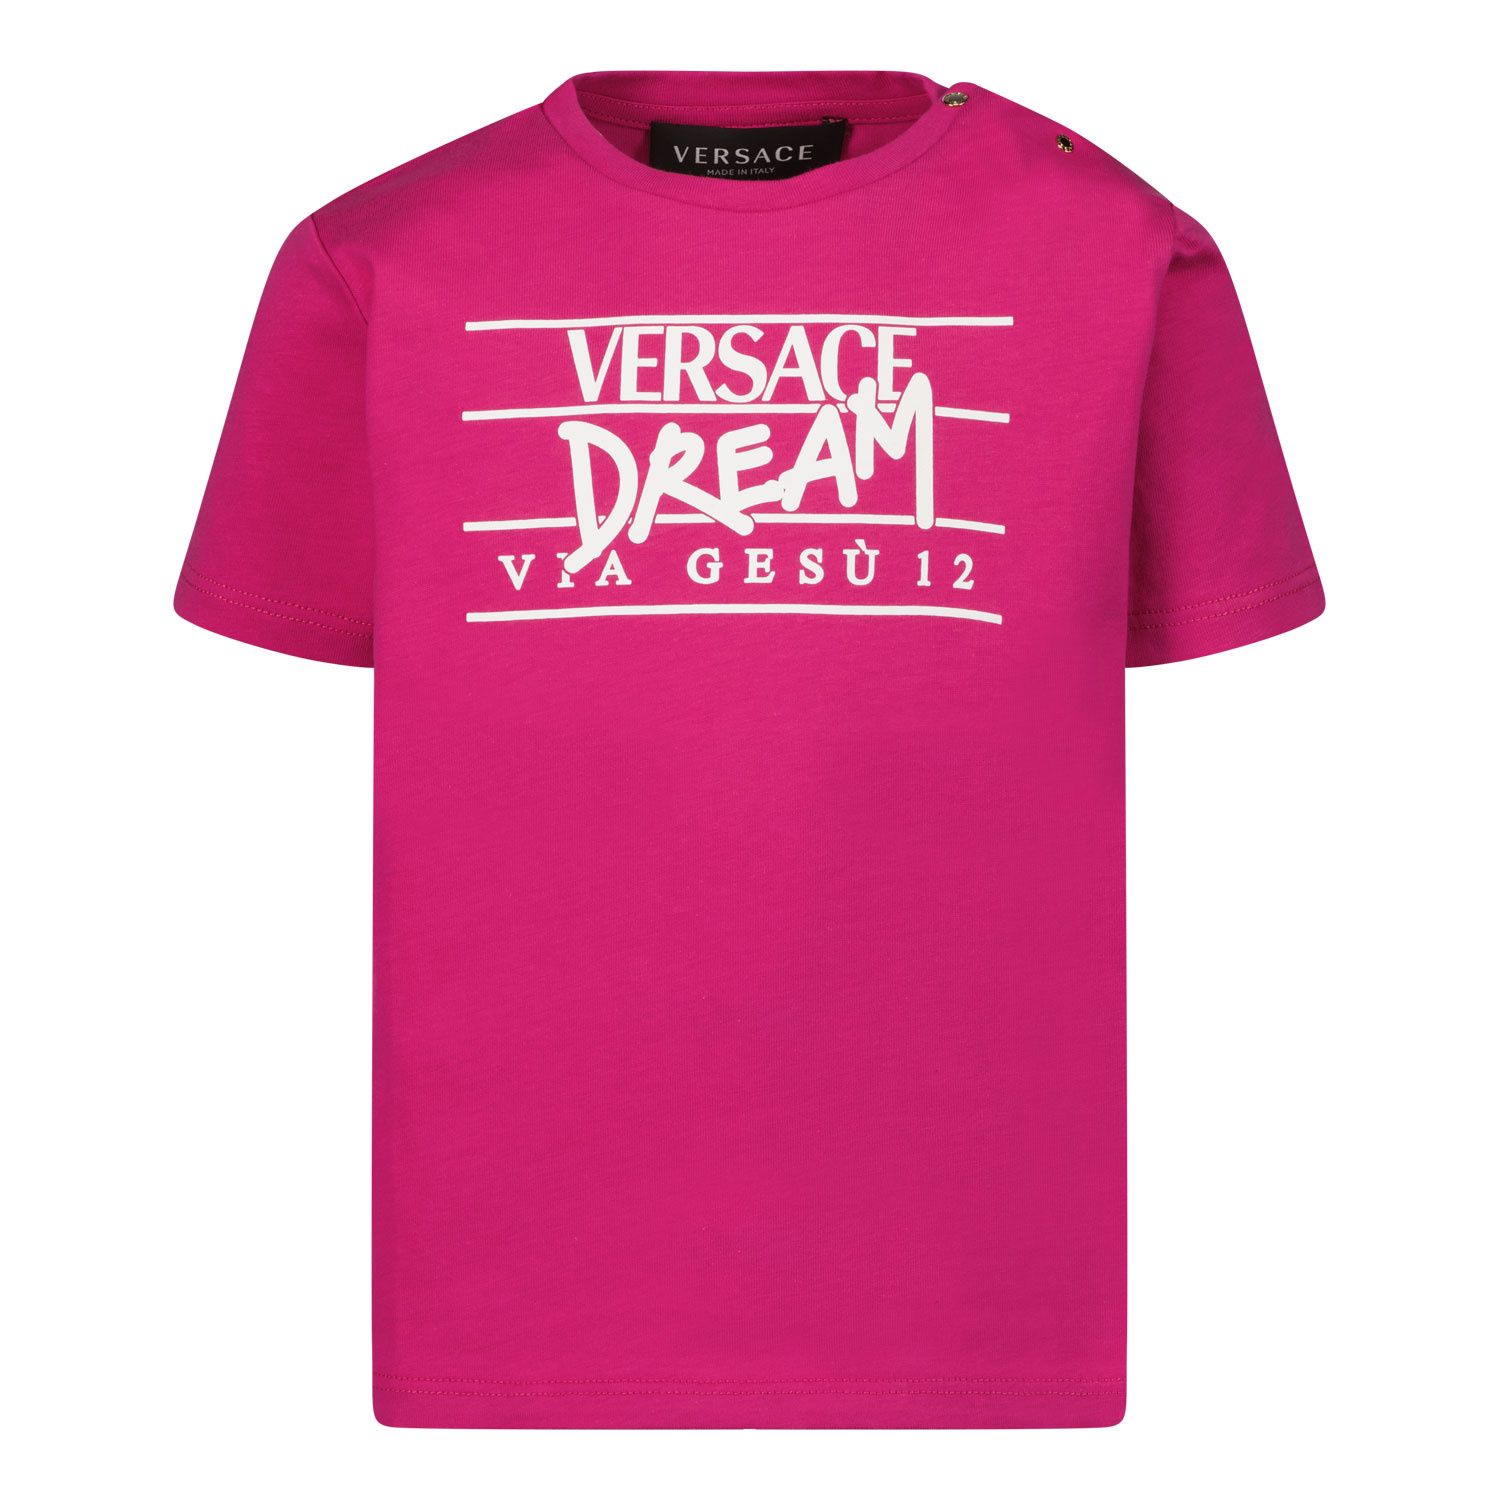 Bild von Versace 1000102 1A03627 Baby-T-Shirt Dunkelrosa